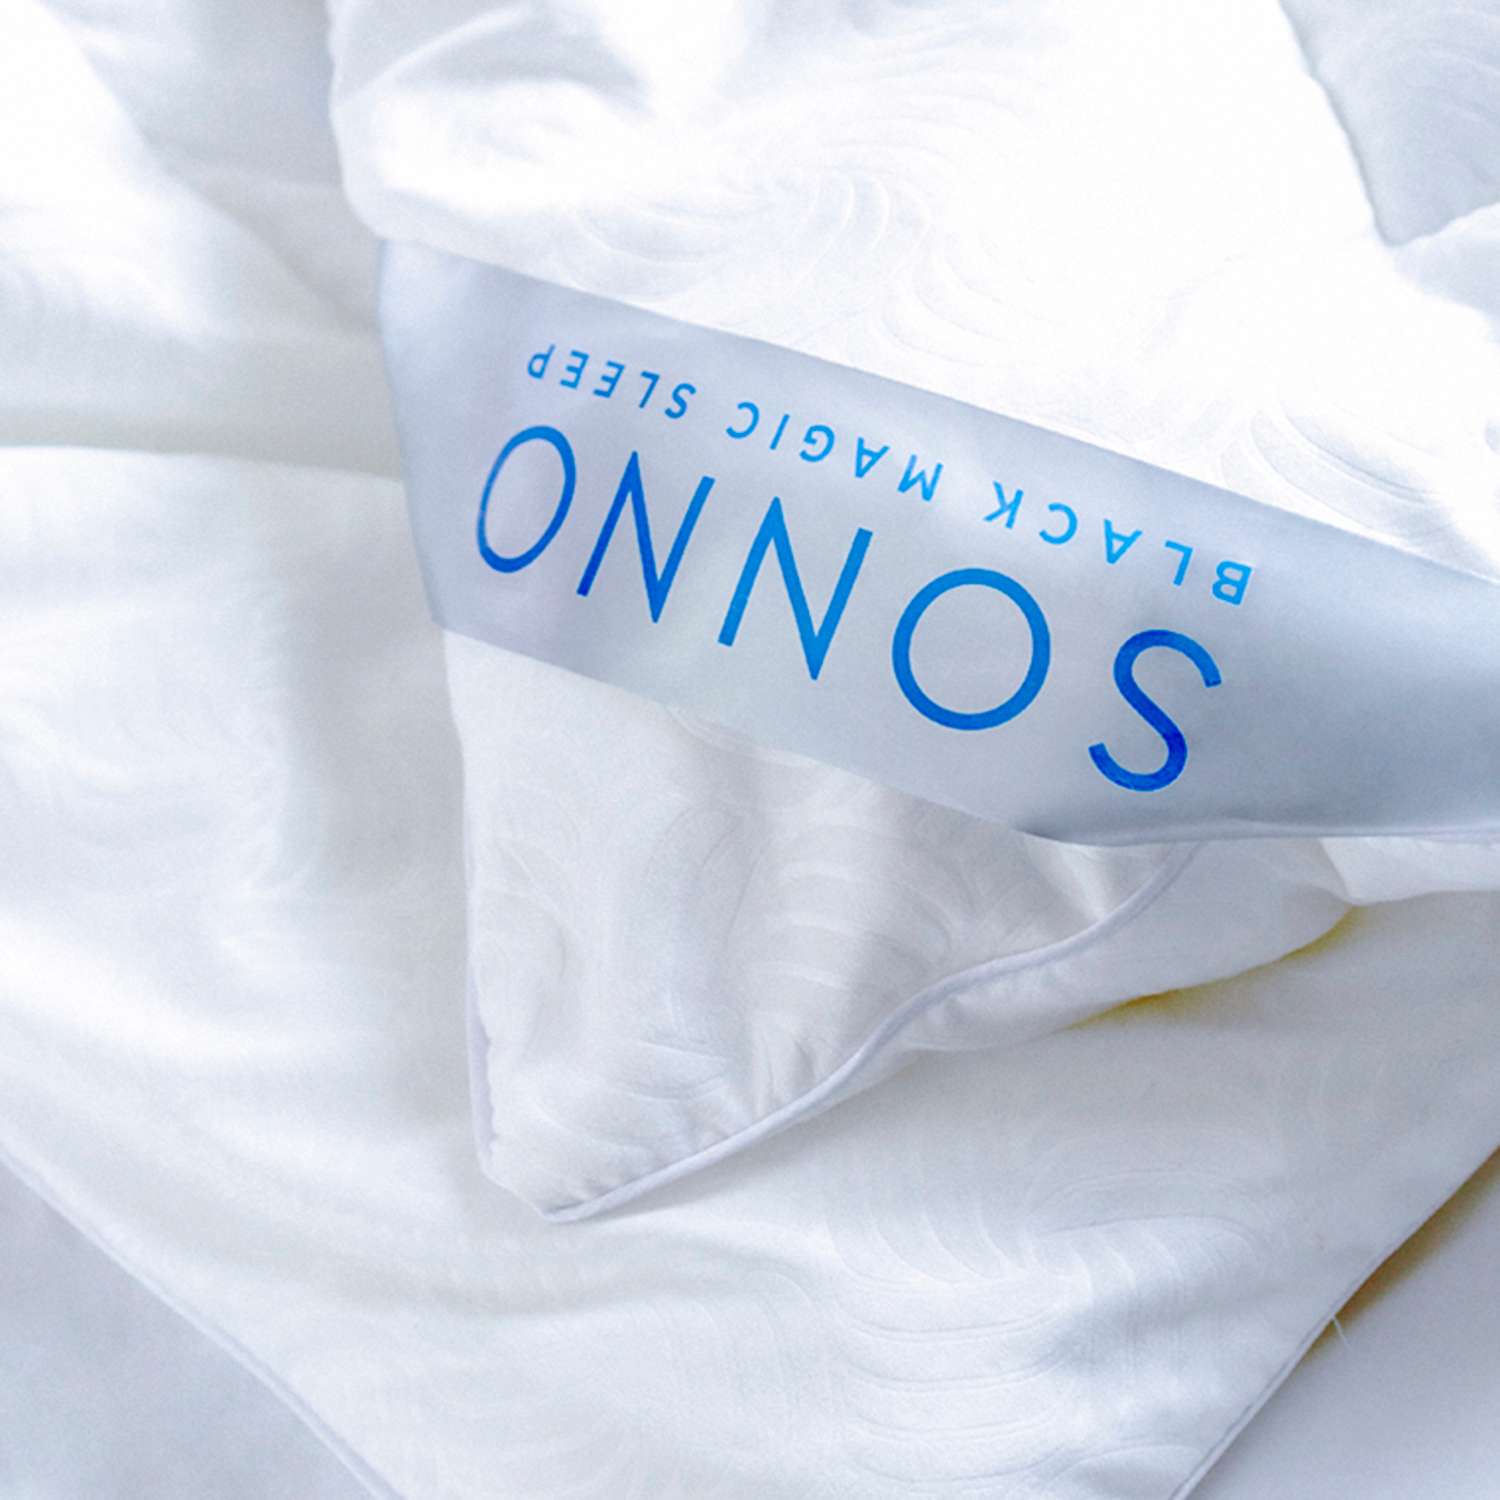 Одеяло SONNO CANADA Евро-размер 200х220 см Всесезонное с наполнителем Amicor TM Цвет Ослепительно белый - фото 3